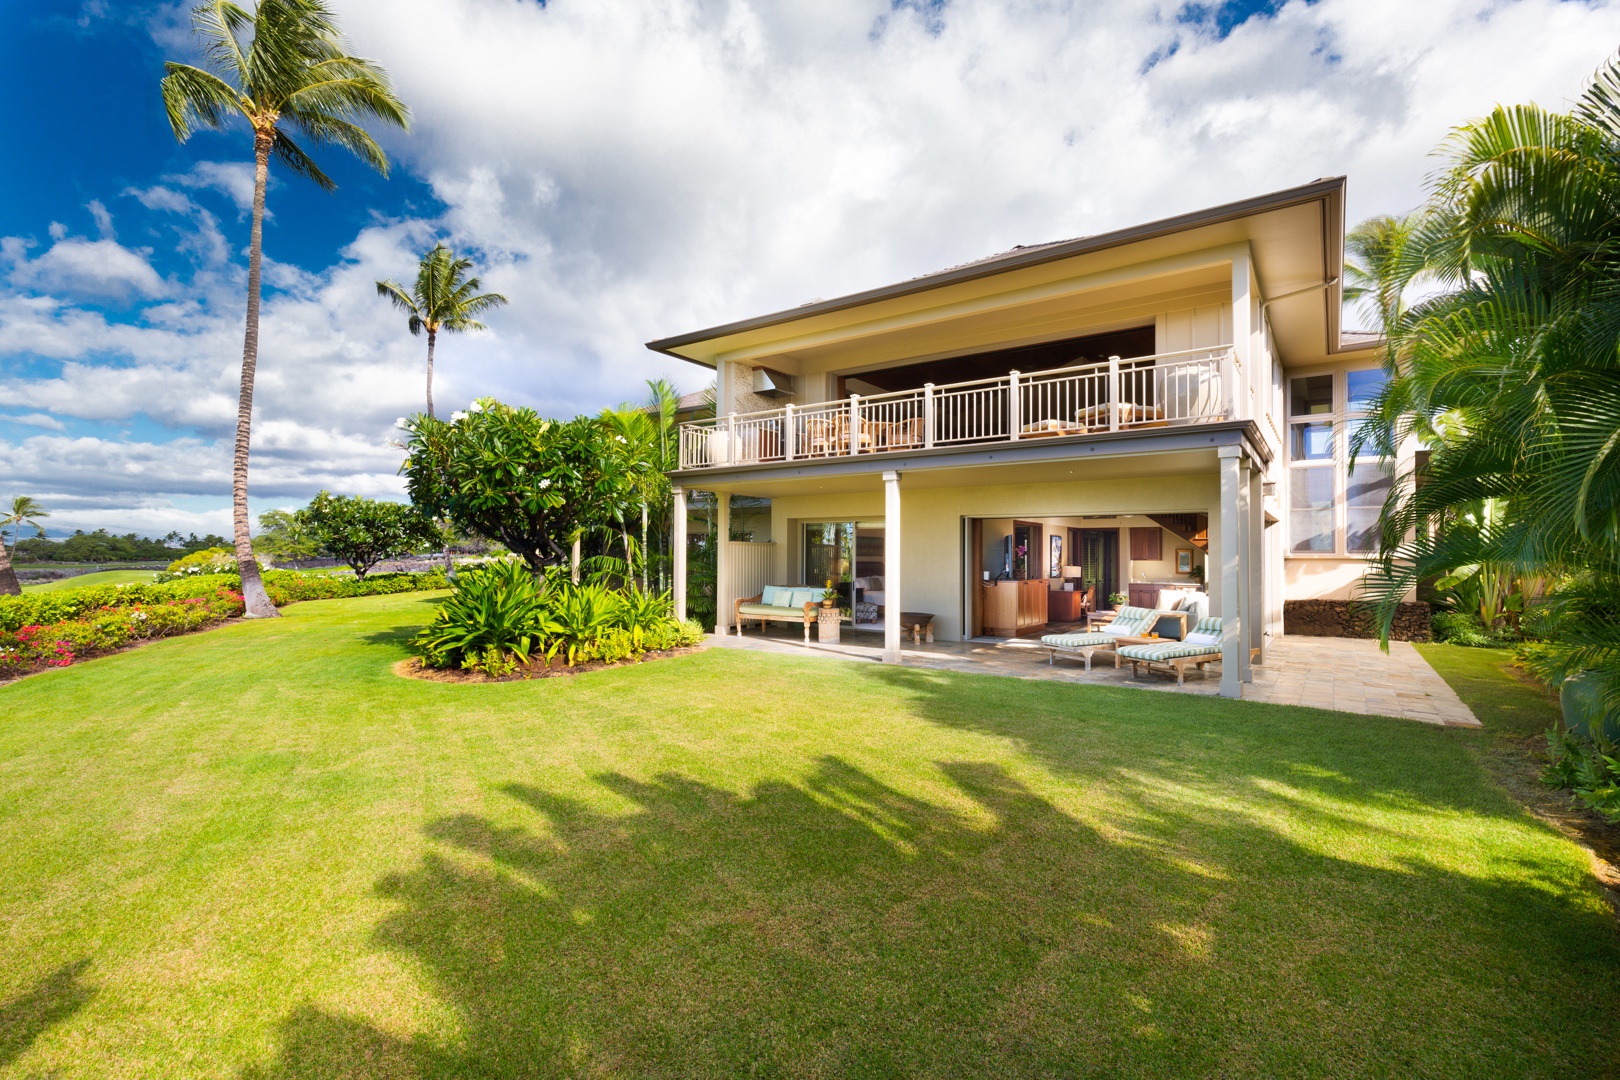 Kailua Kona Vacation Rentals, 3BD Ke Alaula Villa (210A) at Four Seasons Resort at Hualalai - Back of the villa showcasing upper and lower lanais and large private grassy lawn.